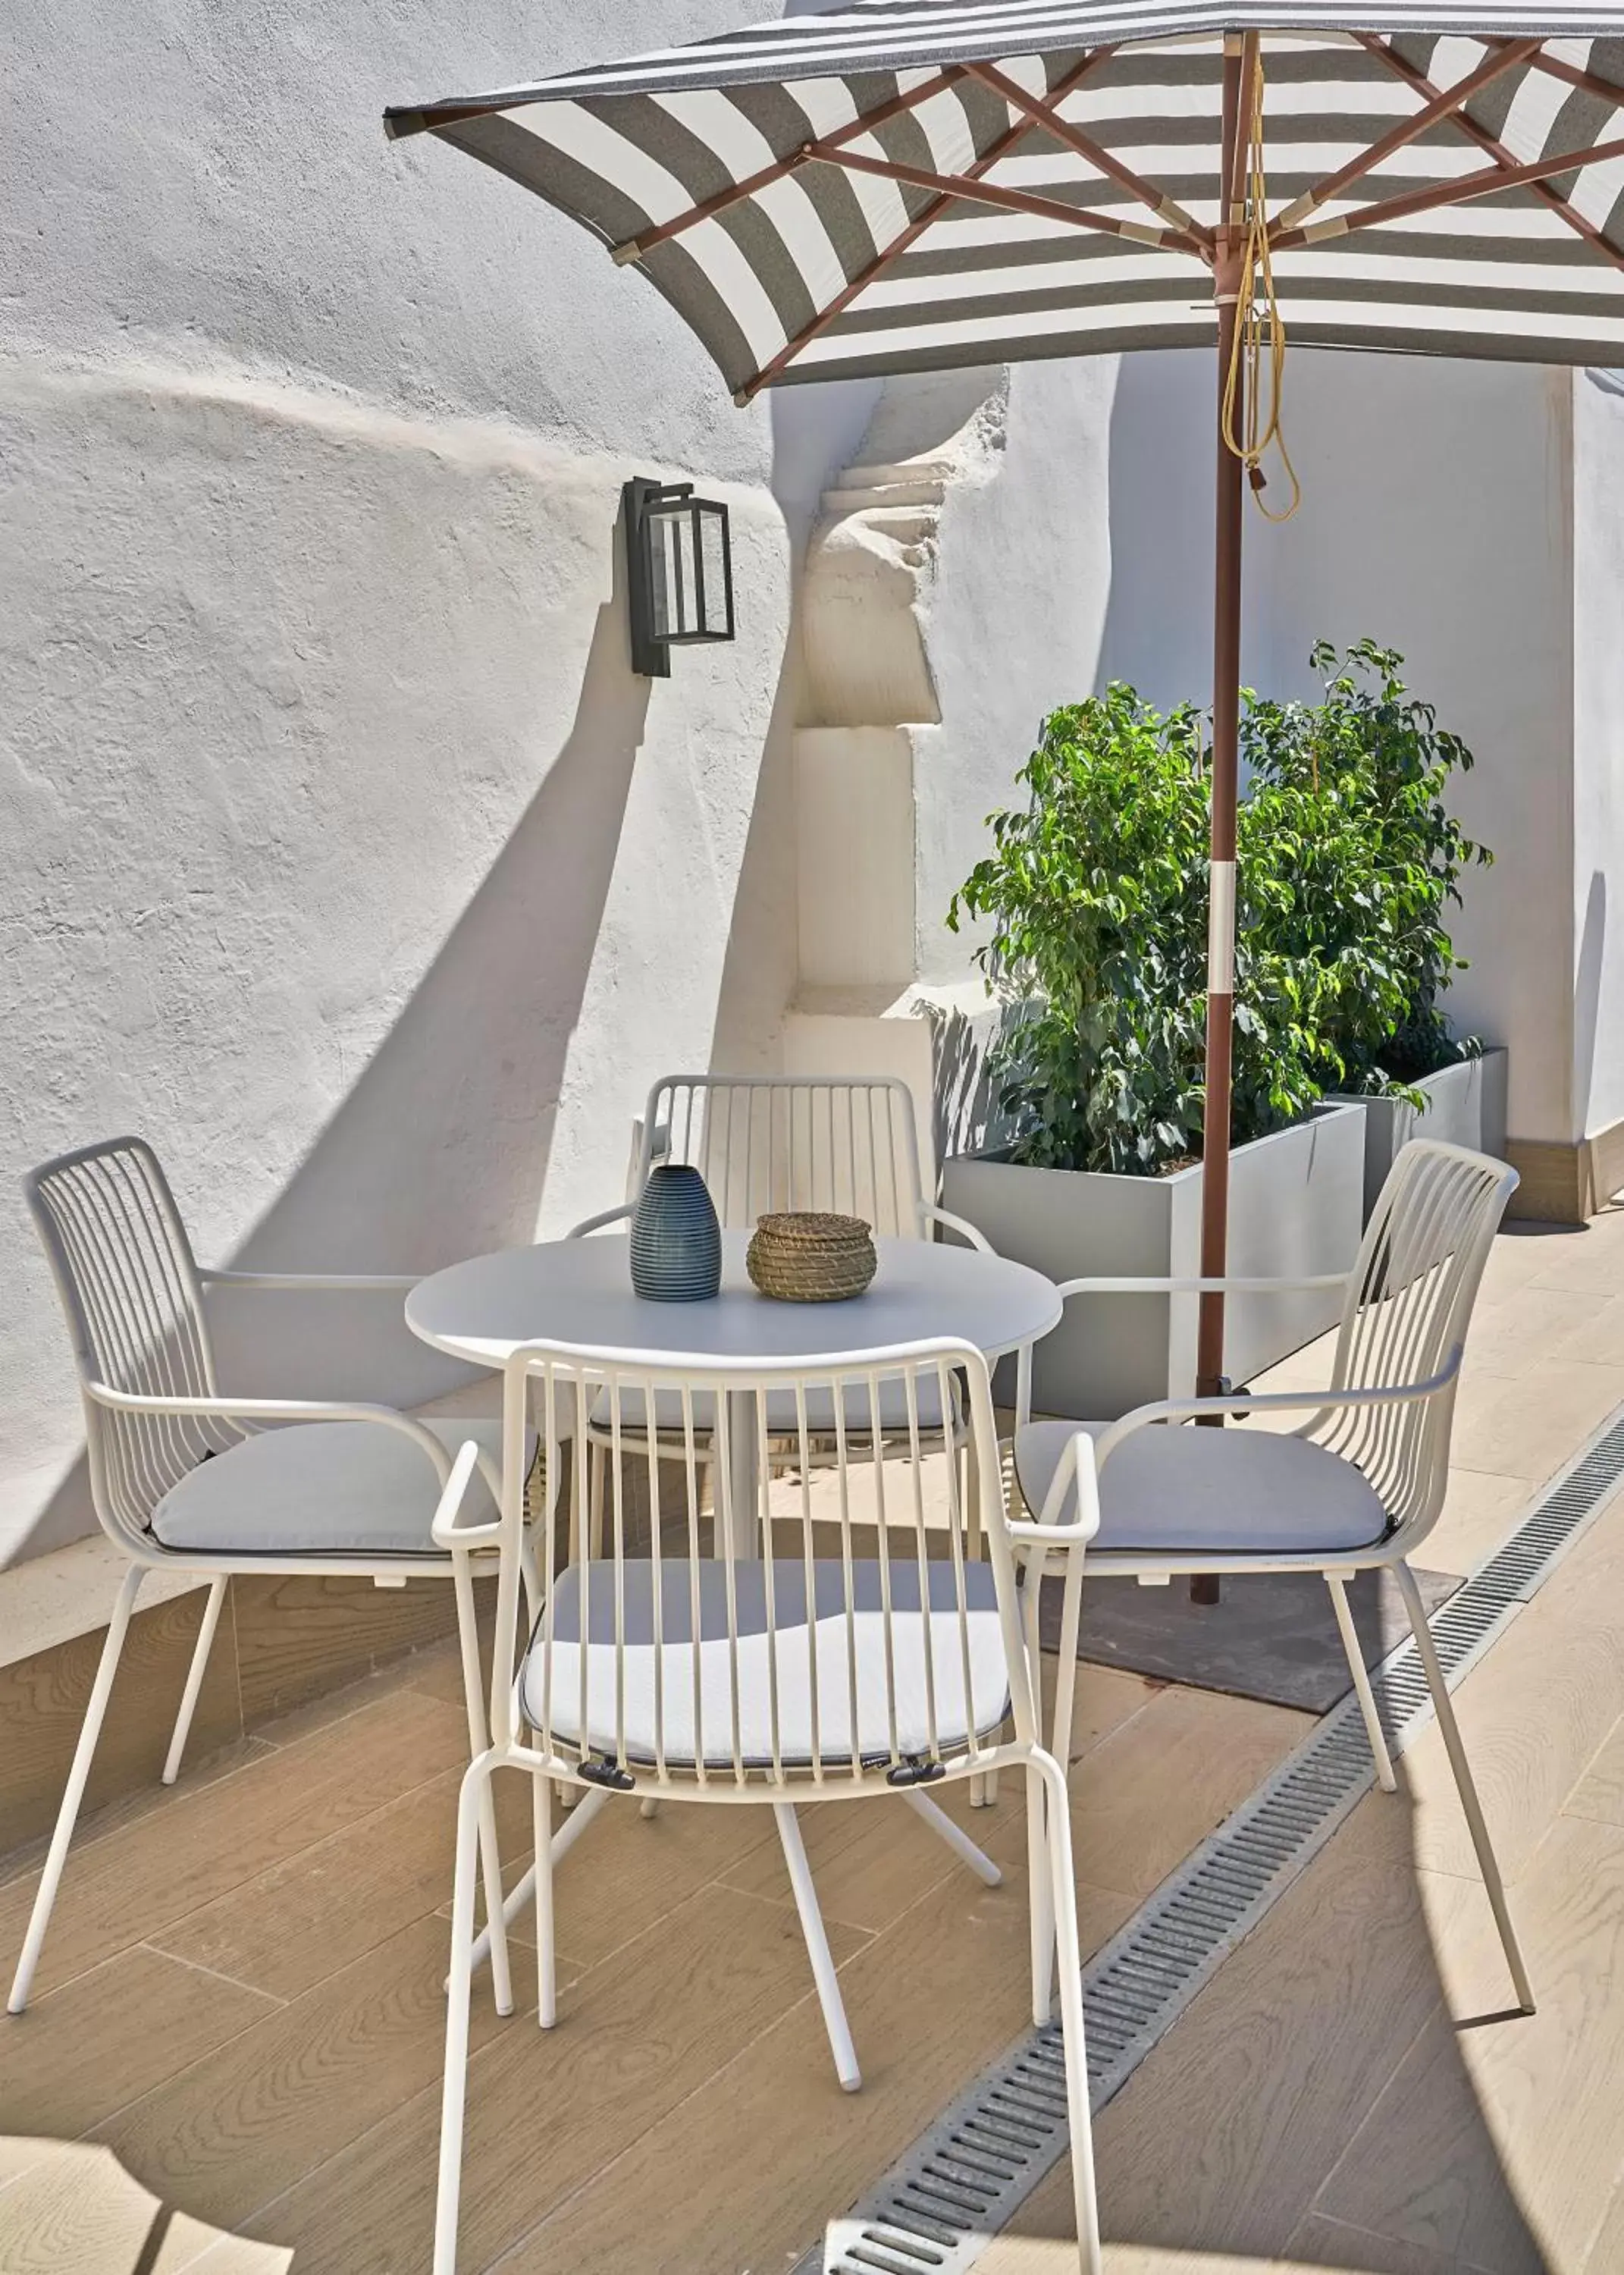 Balcony/Terrace in Vincci Molviedro Suites Apartments